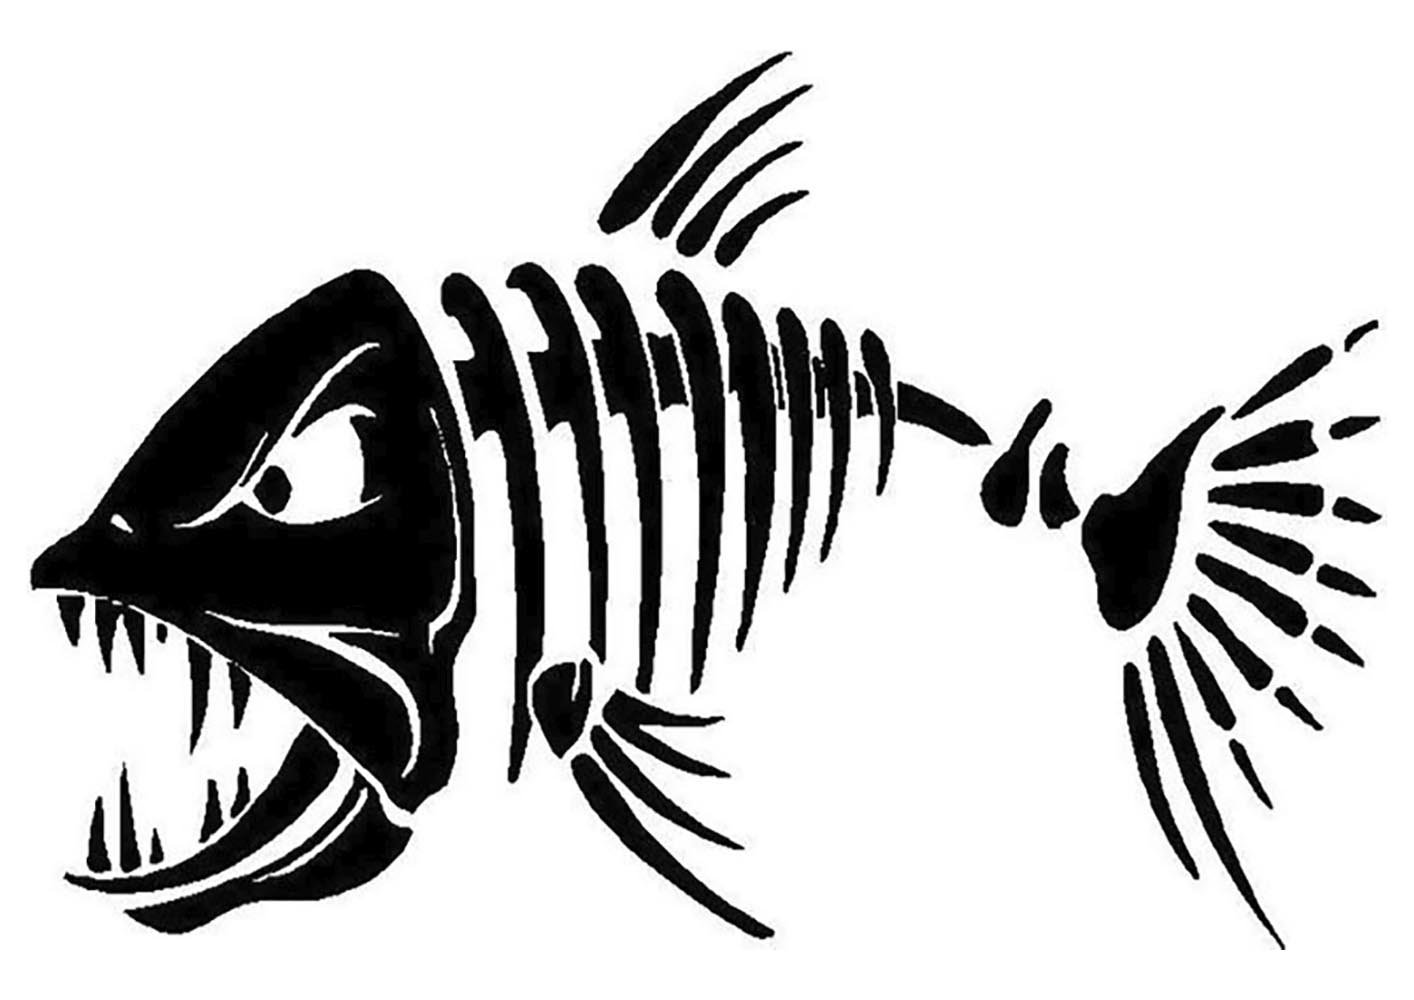 Скелет рыбы